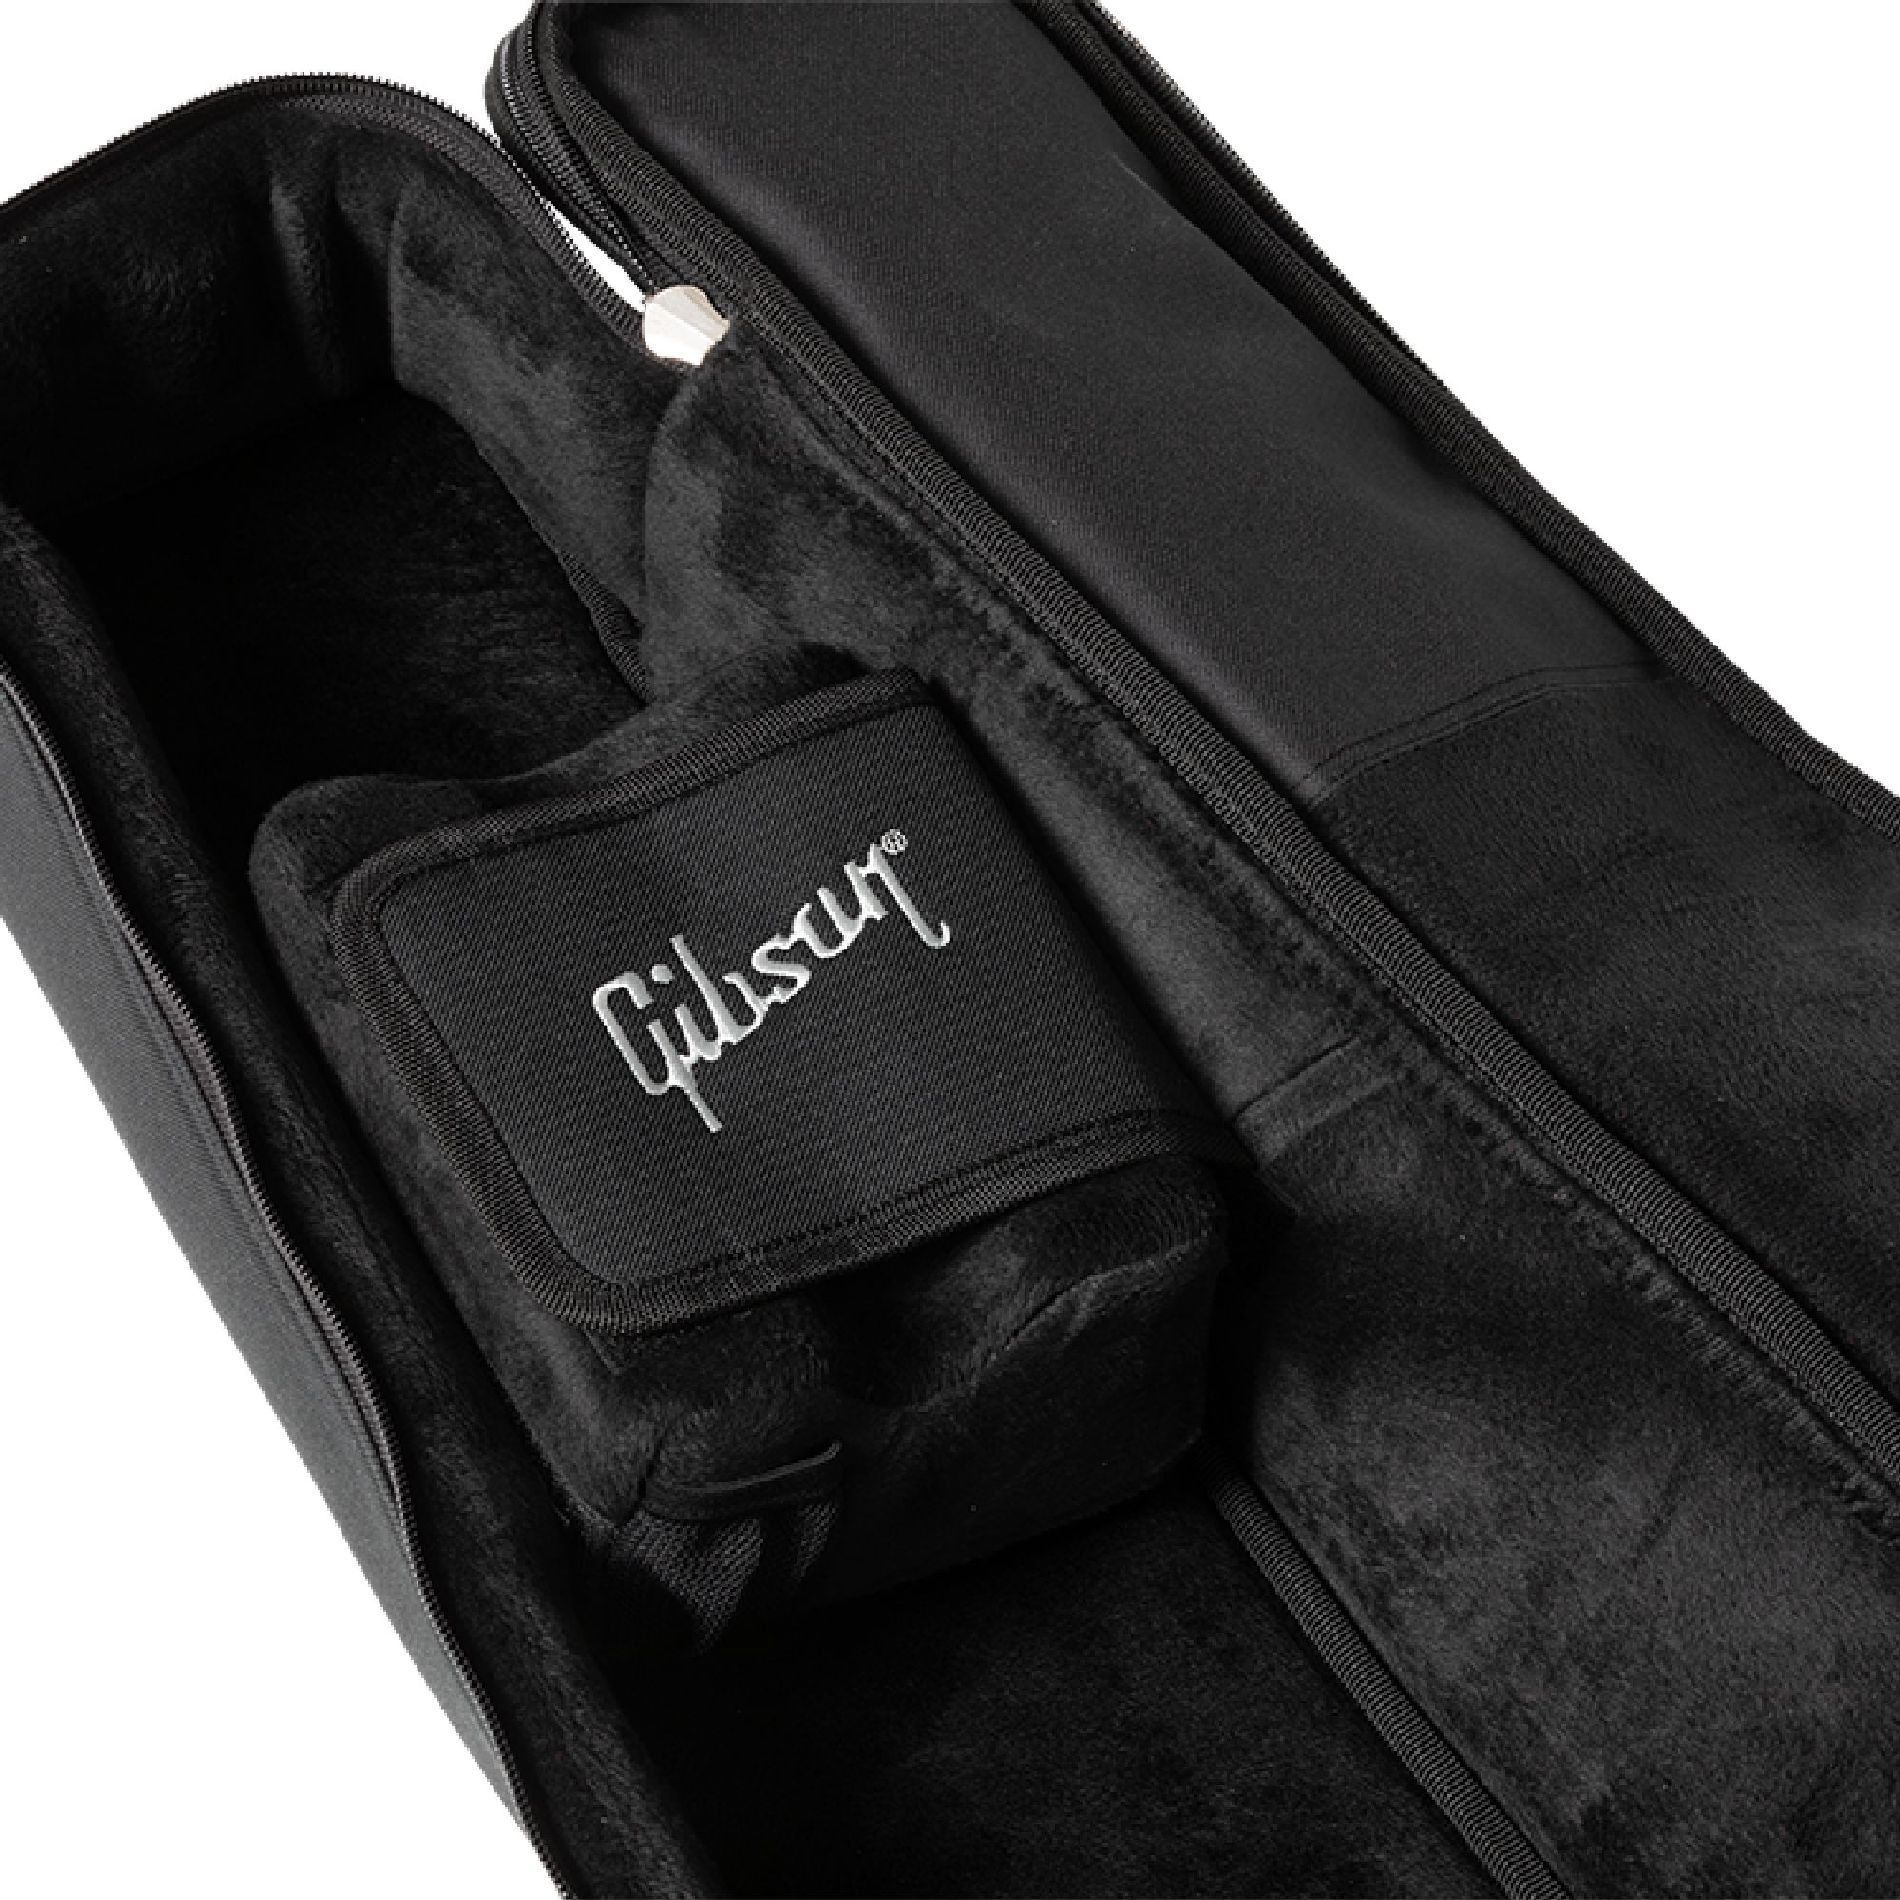 Gibson Premium Gigbag, Small-Body Black Чехлы и кейсы для гитар